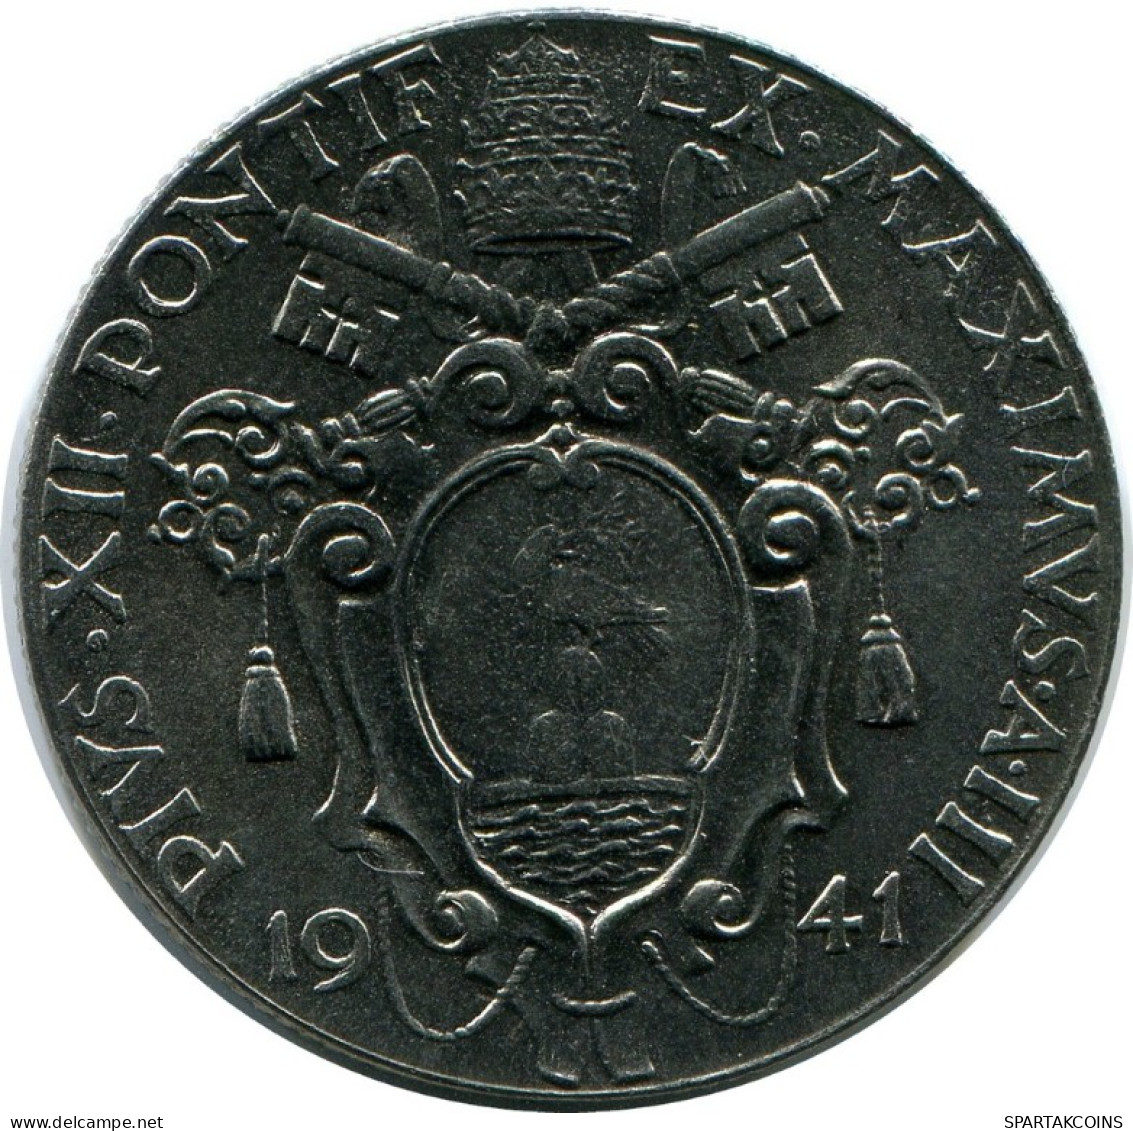 1 LIRE 1941 VATICAN Coin Pius XII (1939-1958) #AH314.16.U.A - Vatican